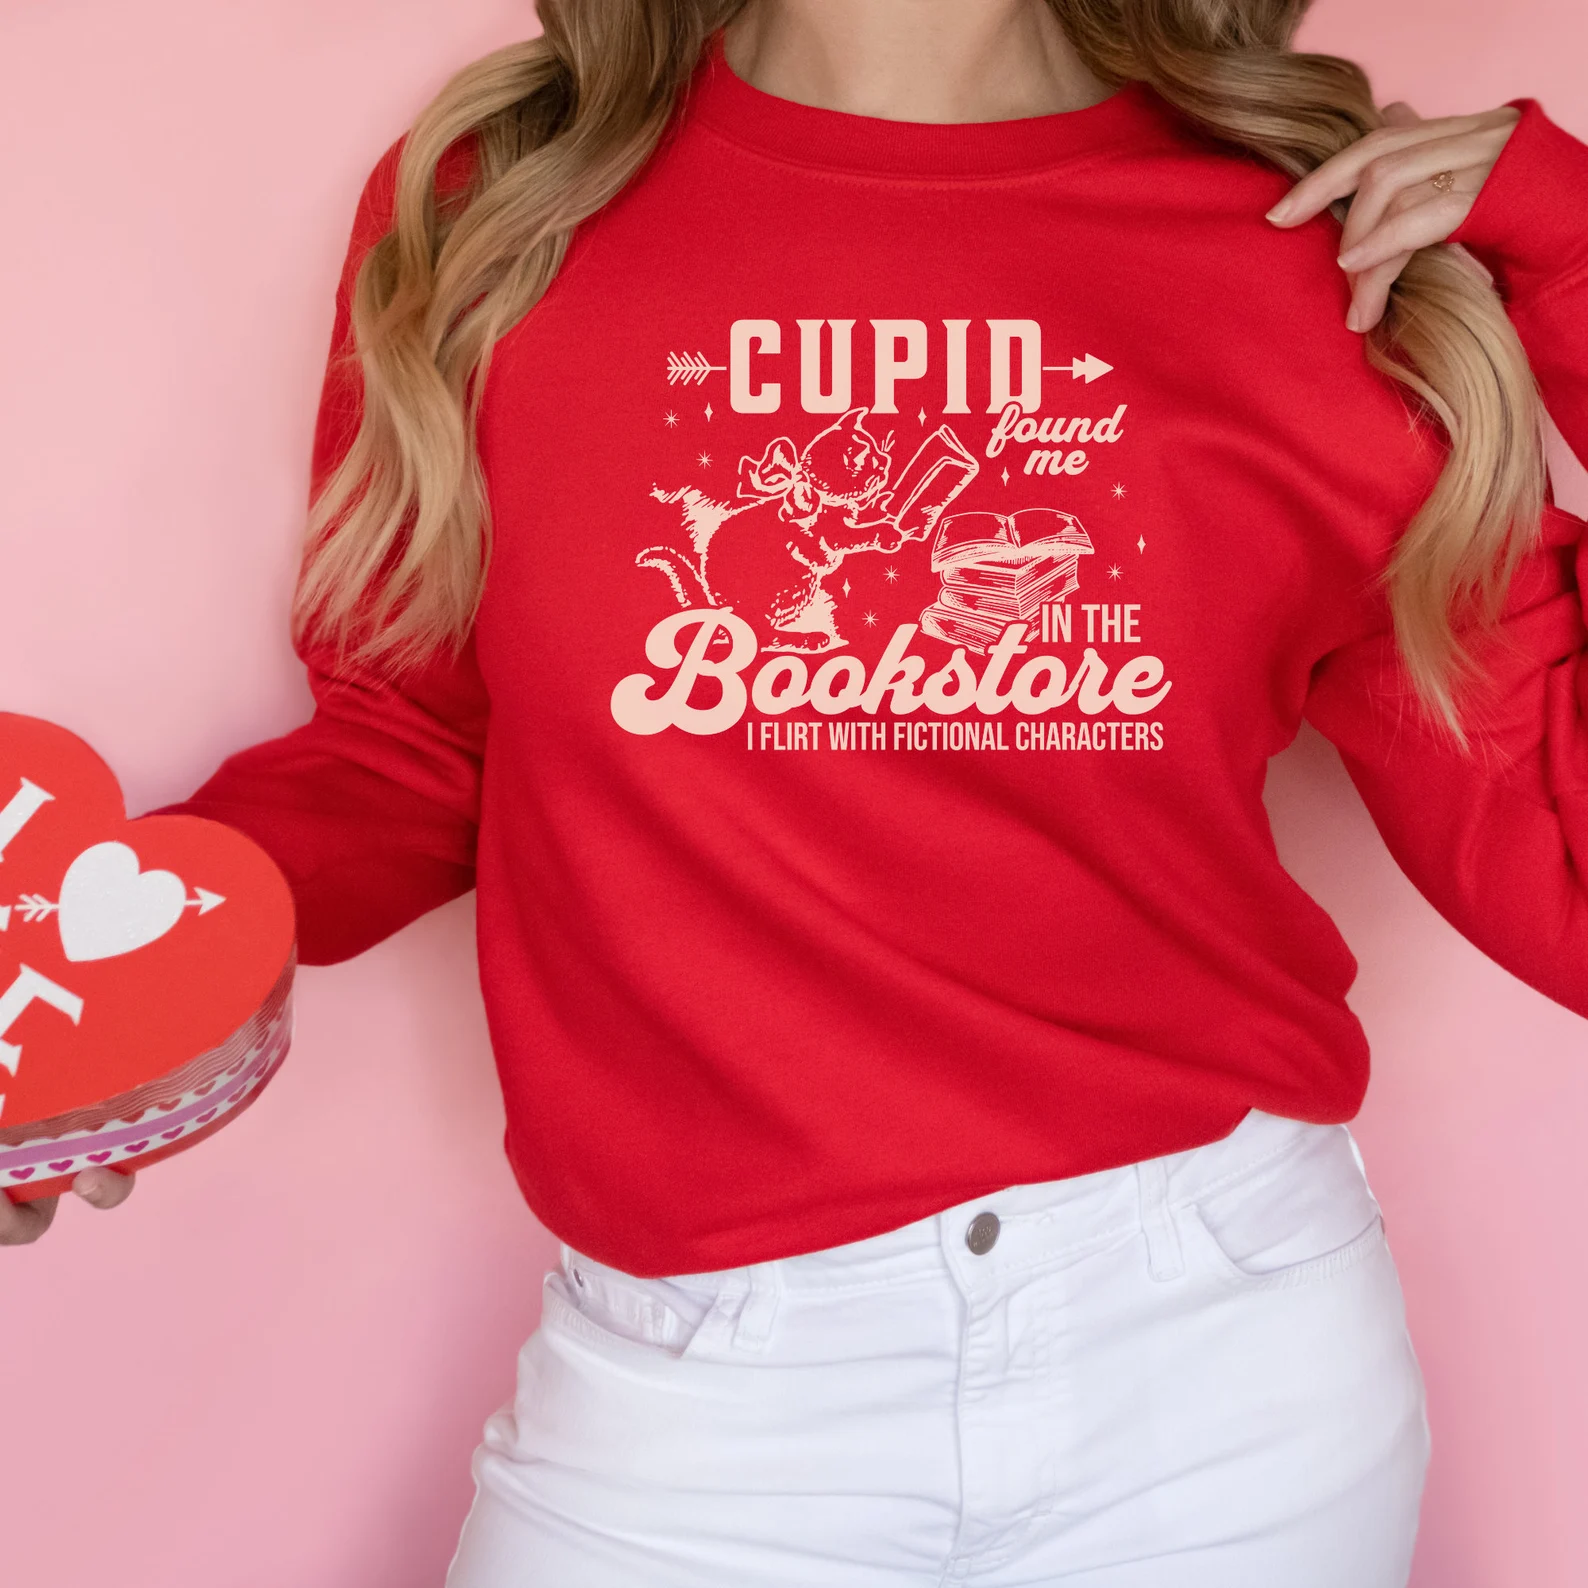 Image d'une personne blanche portant un sweat-shirt rouge qui dit "Cupidon m'a trouvé dans la librairie.  Je flirte avec des personnages fictifs."